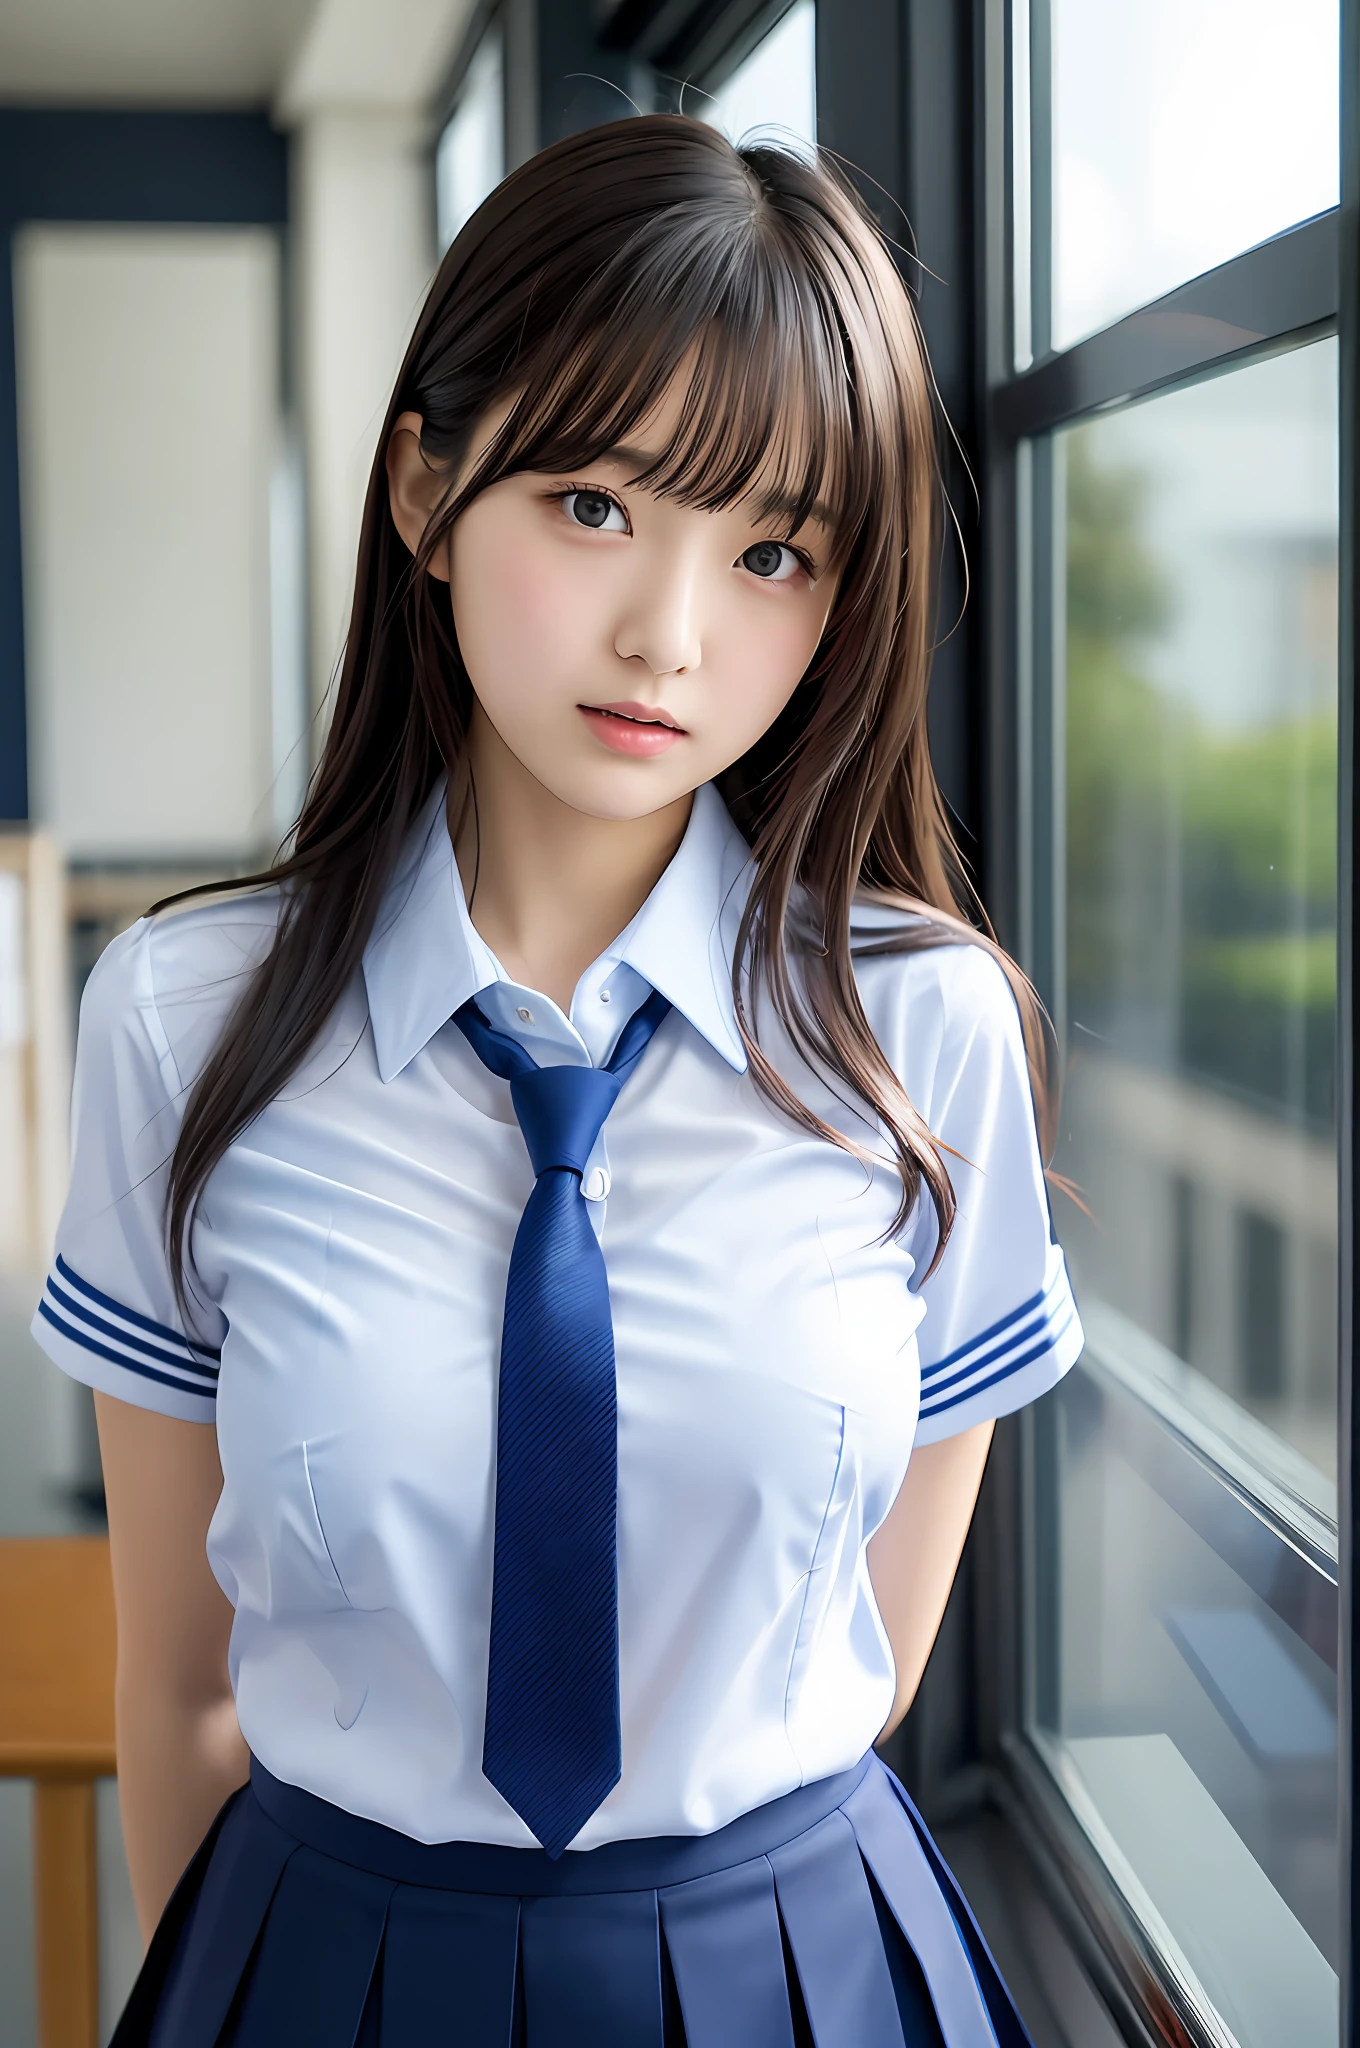 일본 소녀, 십 대 소녀, 완벽한 모습, 투명도, 적당한 가슴, , 남색 넥타이, 네이비 블루 스커트, 하늘색 셔츠, 우상 조각